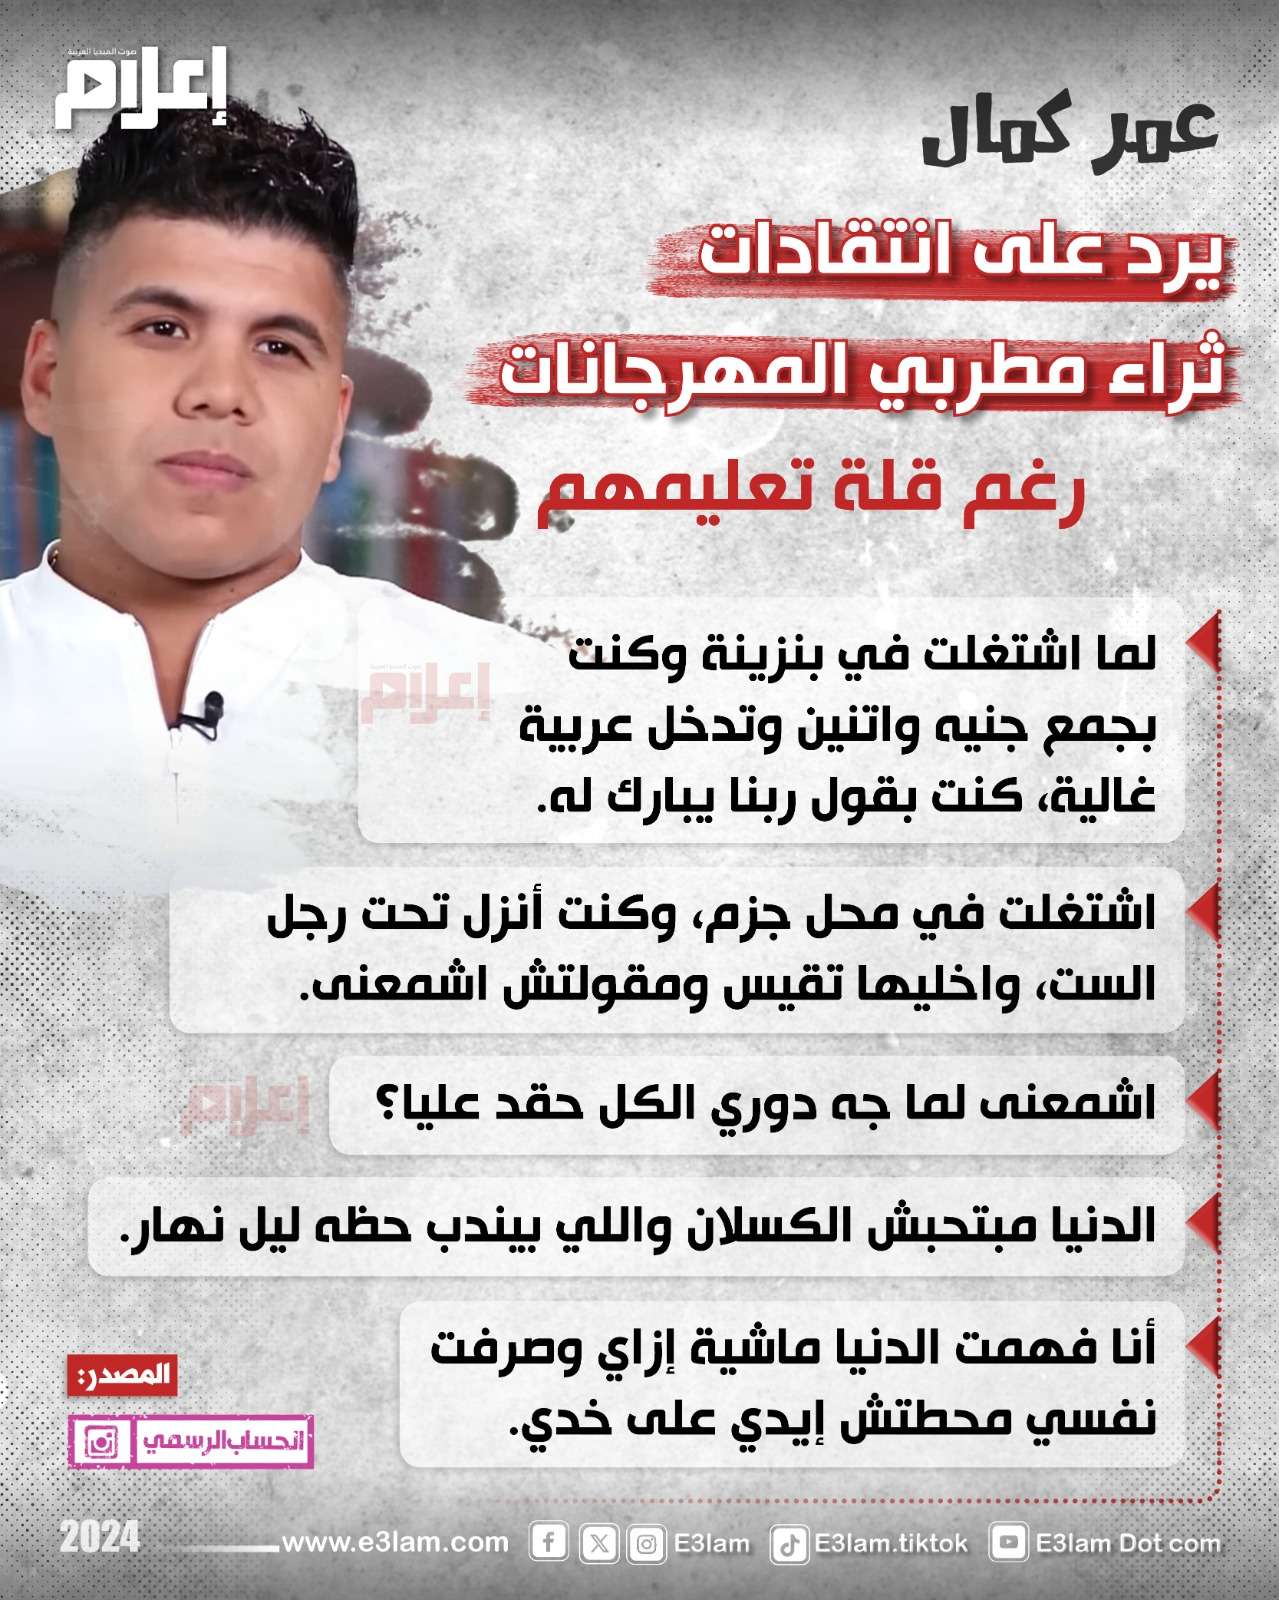 عمر كمال يرد على انتقادات ثراء مطربي المهرجانات برغم قلة تعليمهم